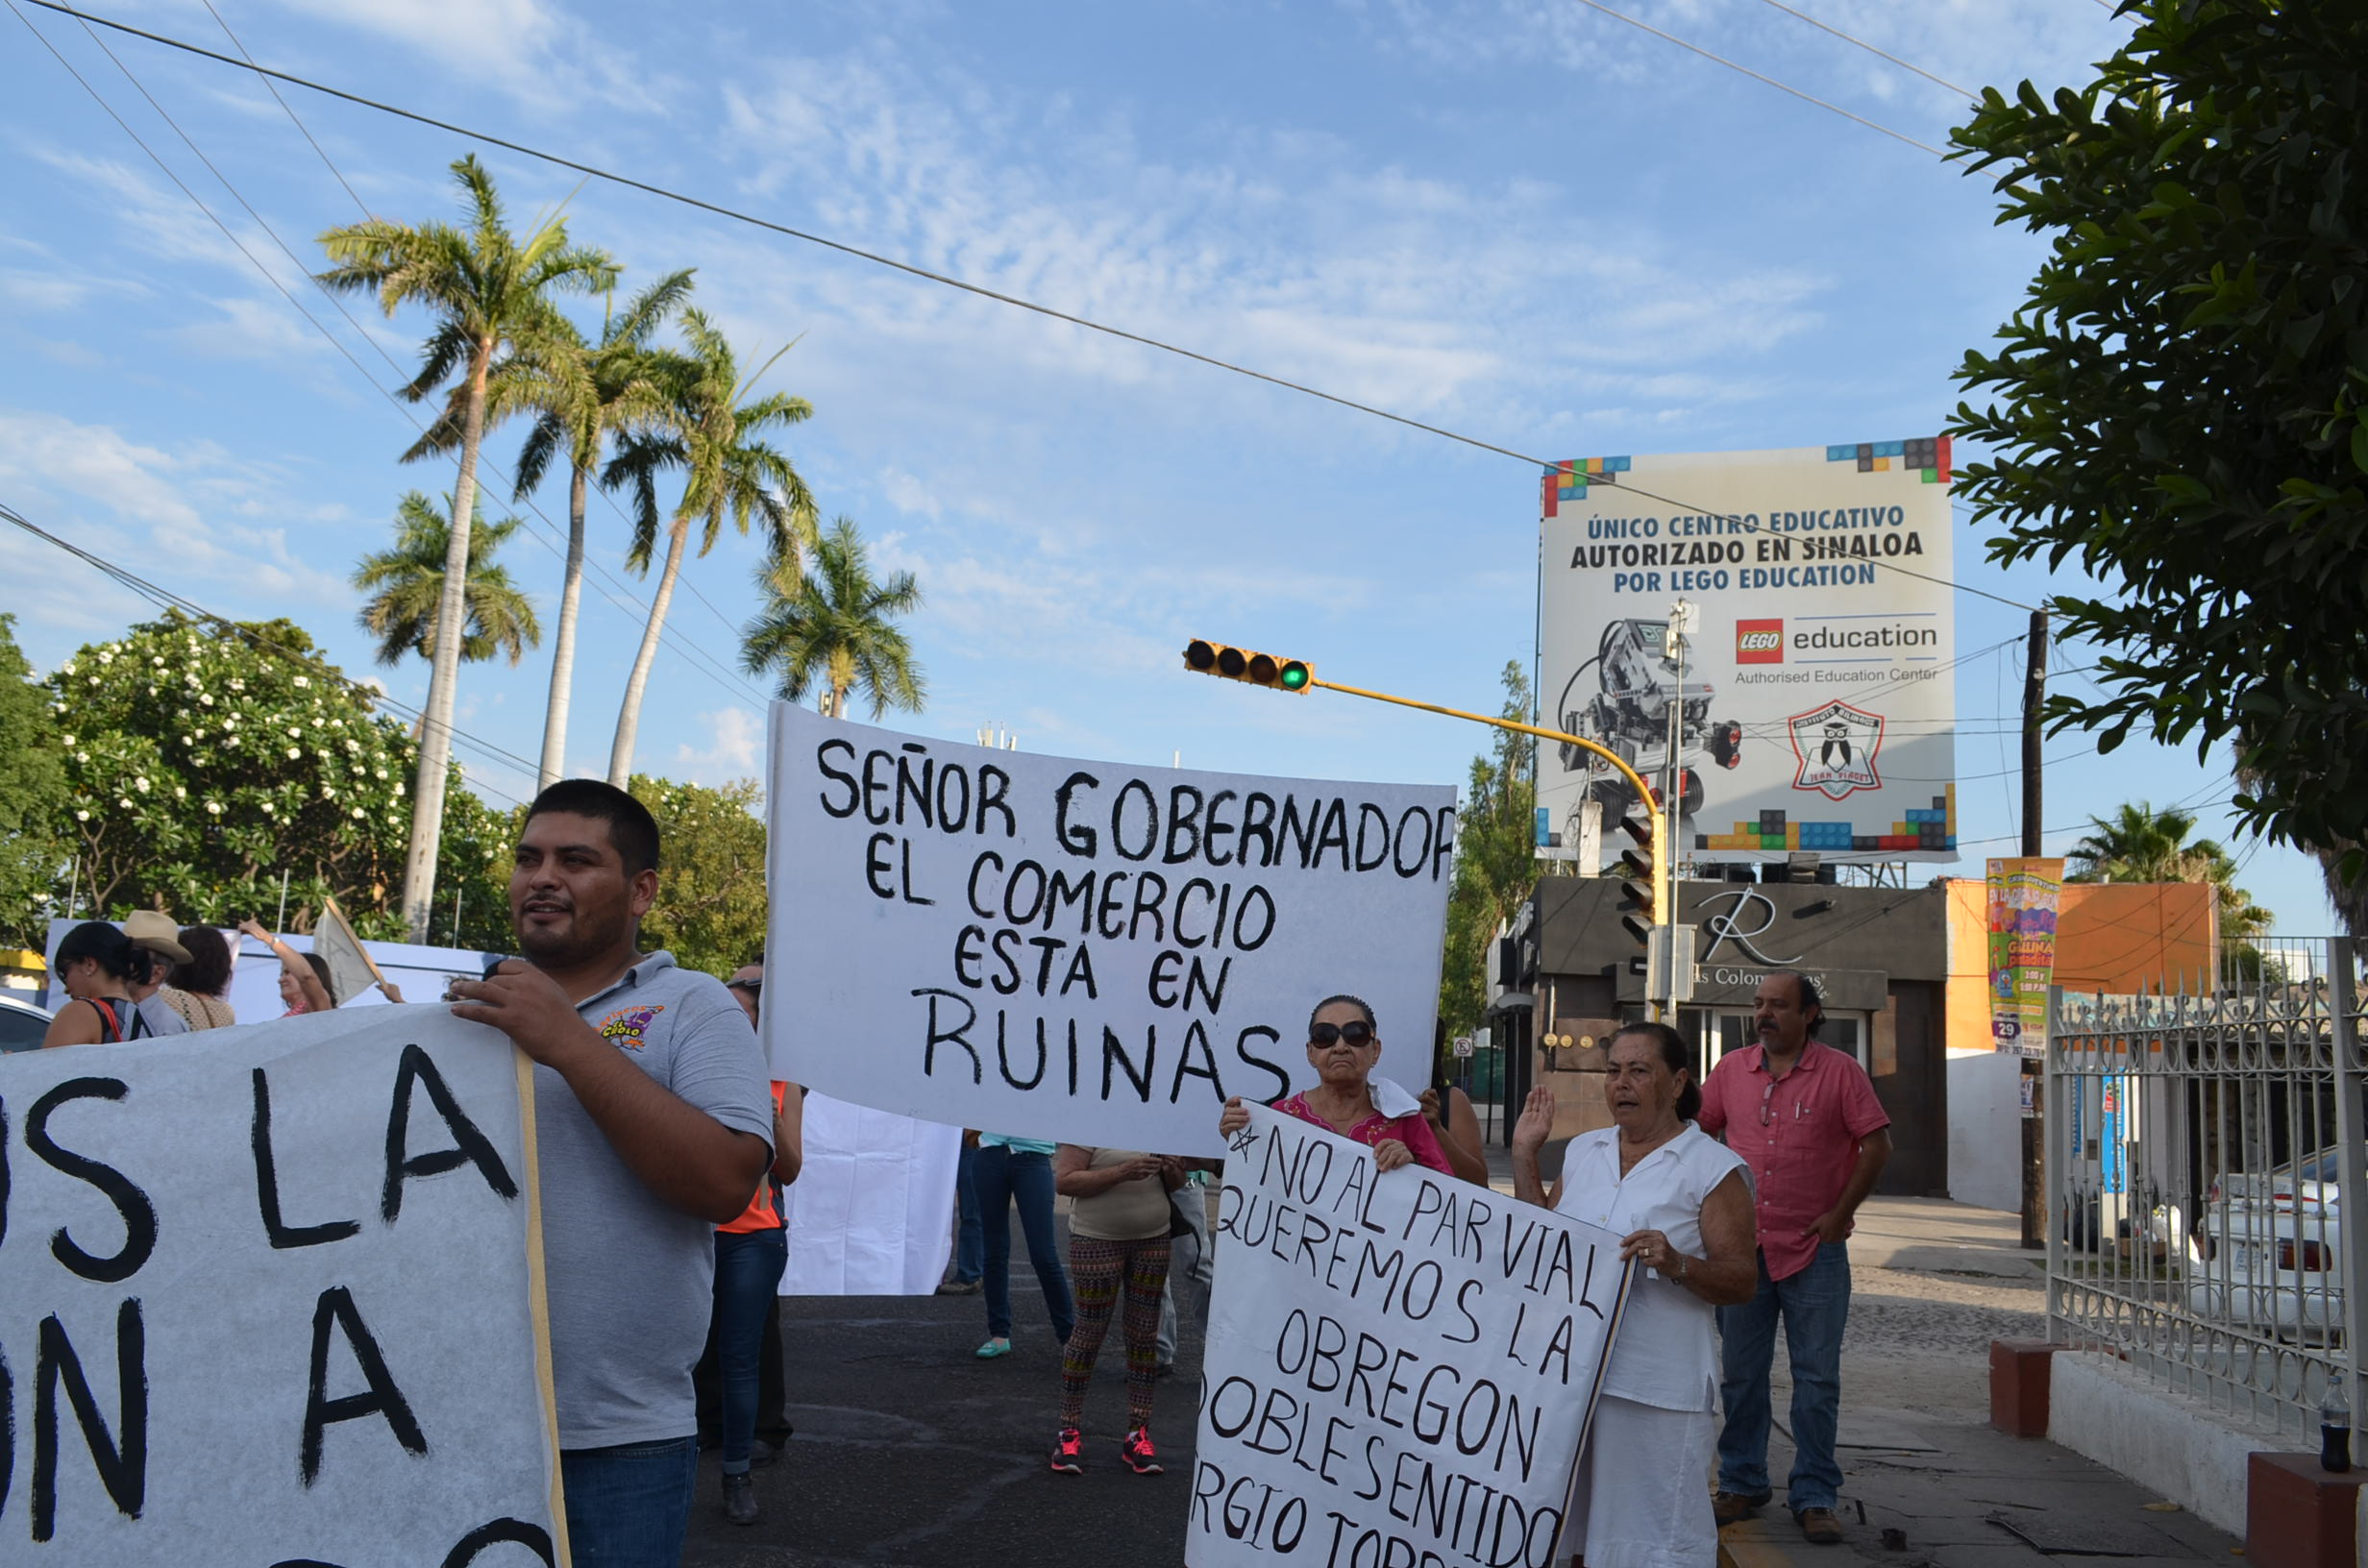 Los protestantes aseguran que el único que puede solucionar este caos vial es el gobernador. Fotografía: Gabriela Sánchez